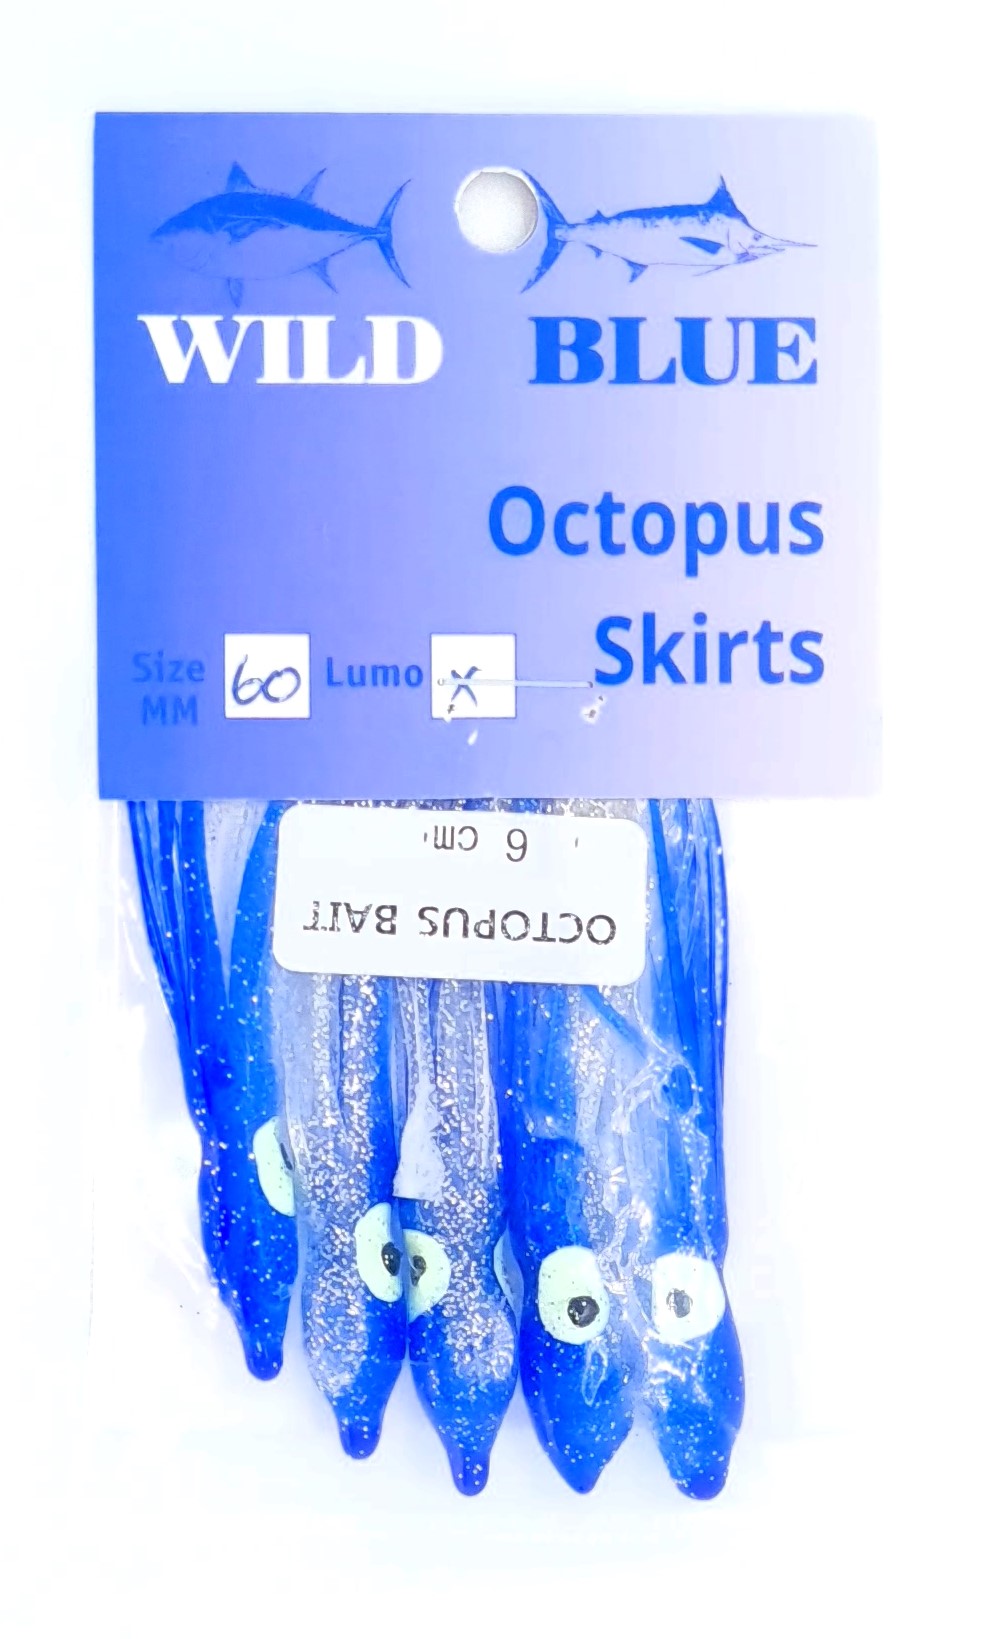 WILD BLUE OCTOPUS SKIRT 60MM 5 PACK